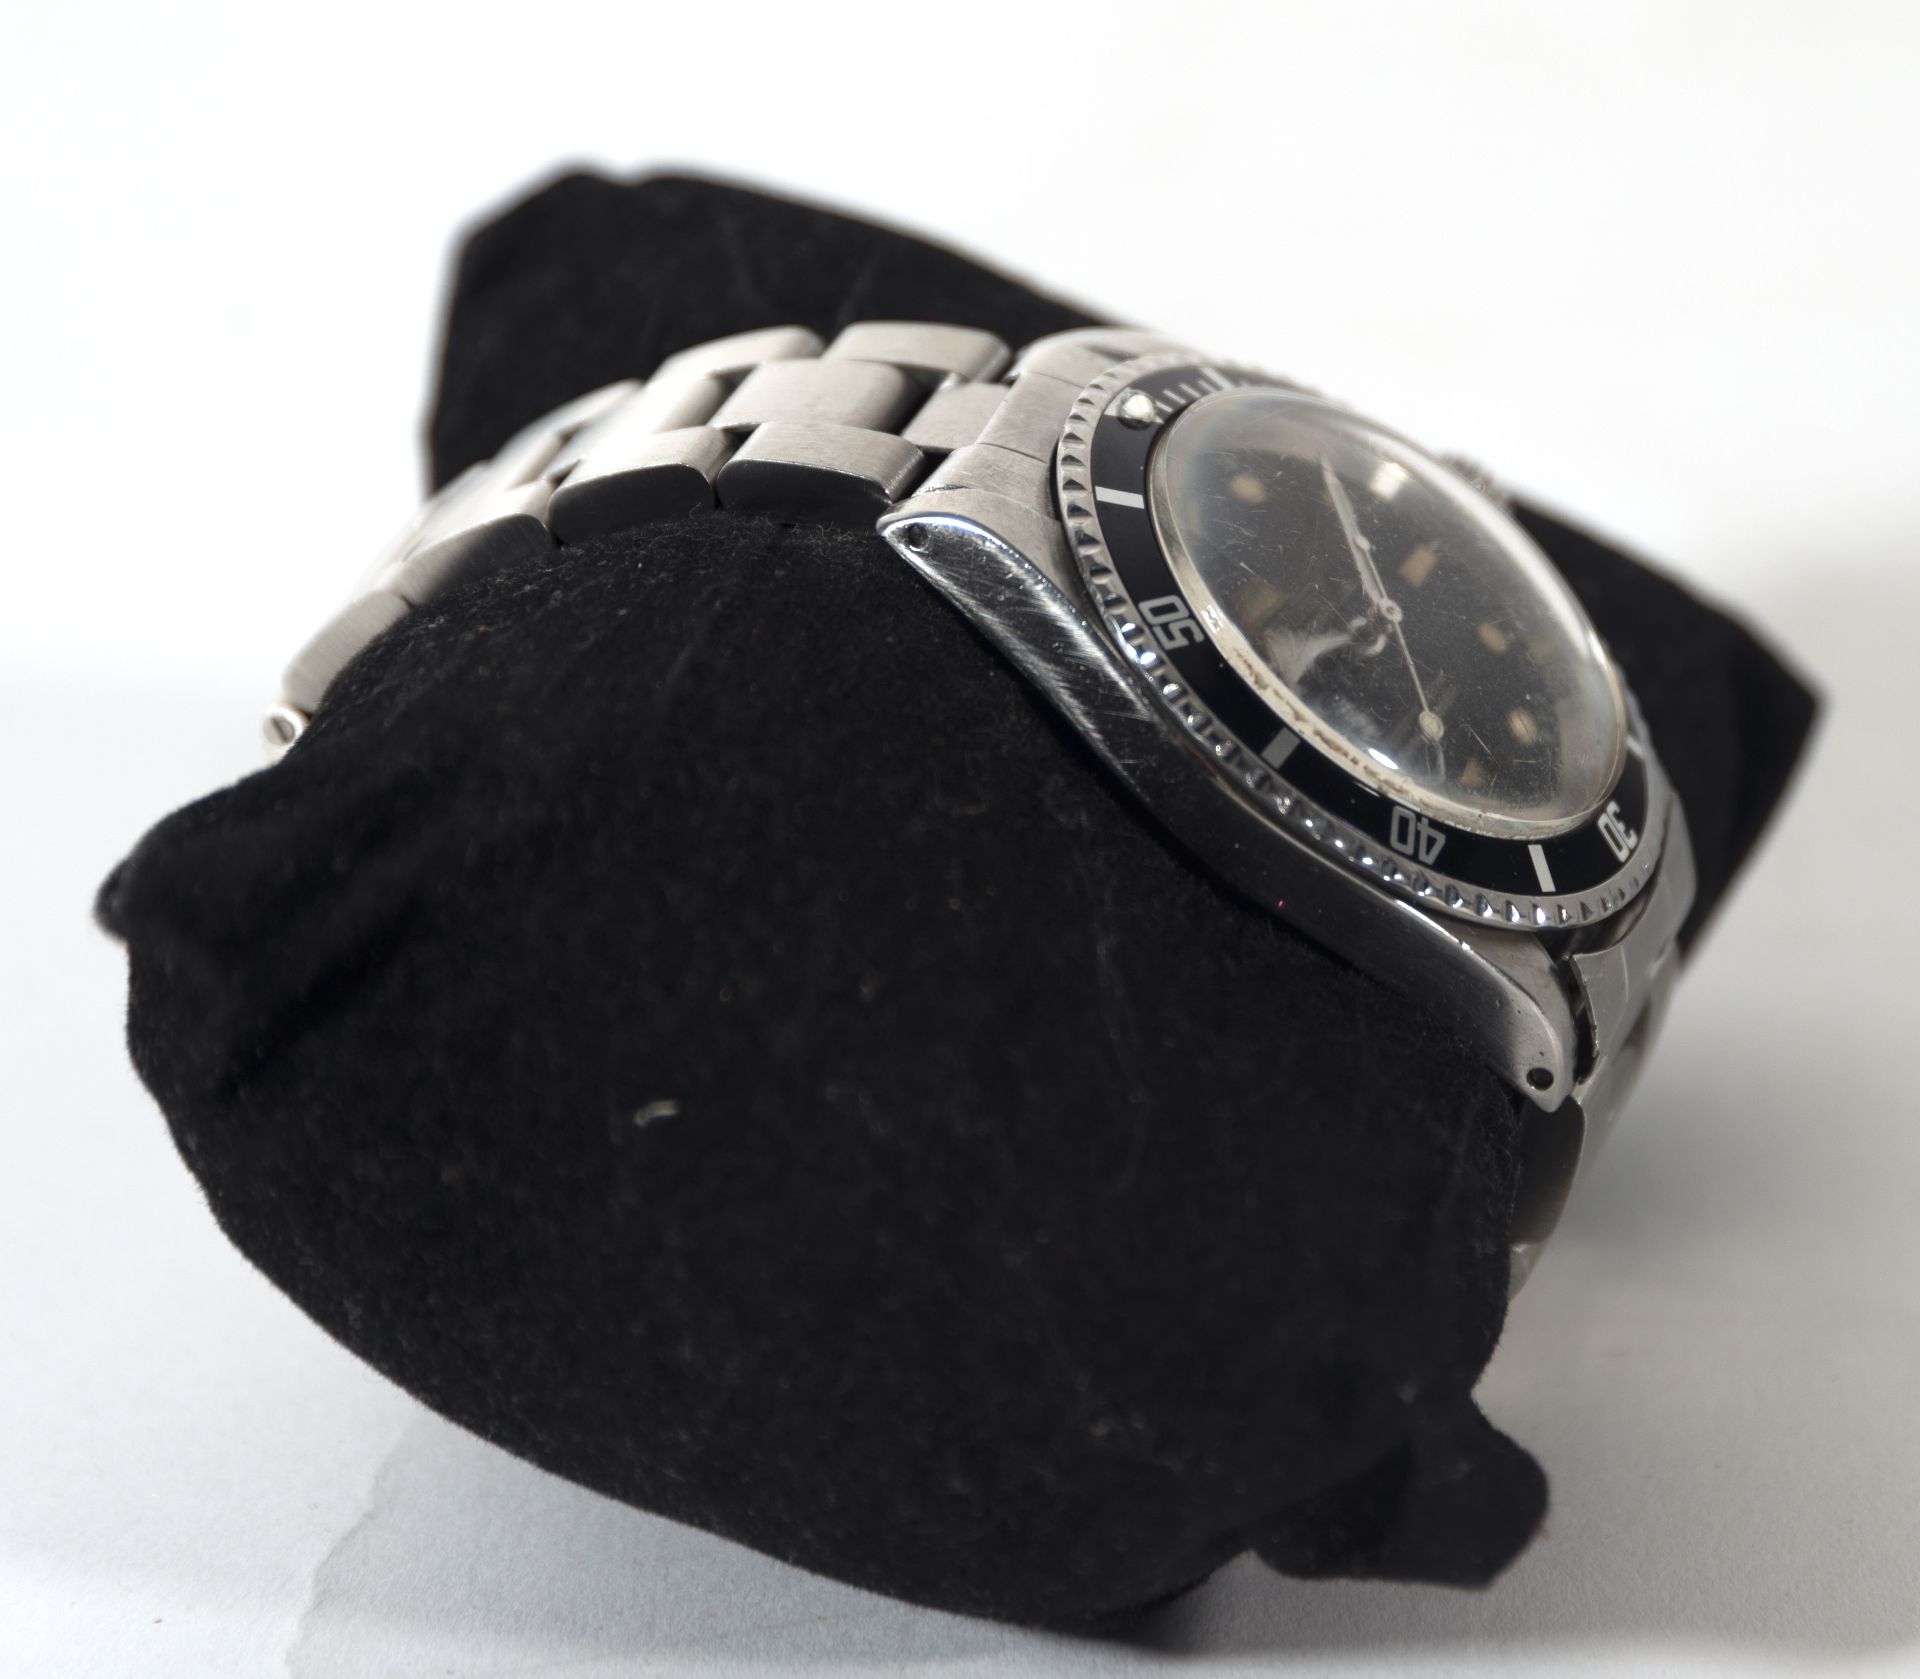 Elegant Rolex Submariner watch model 5513 vintage in steel, 1960s - Bild 4 aus 9